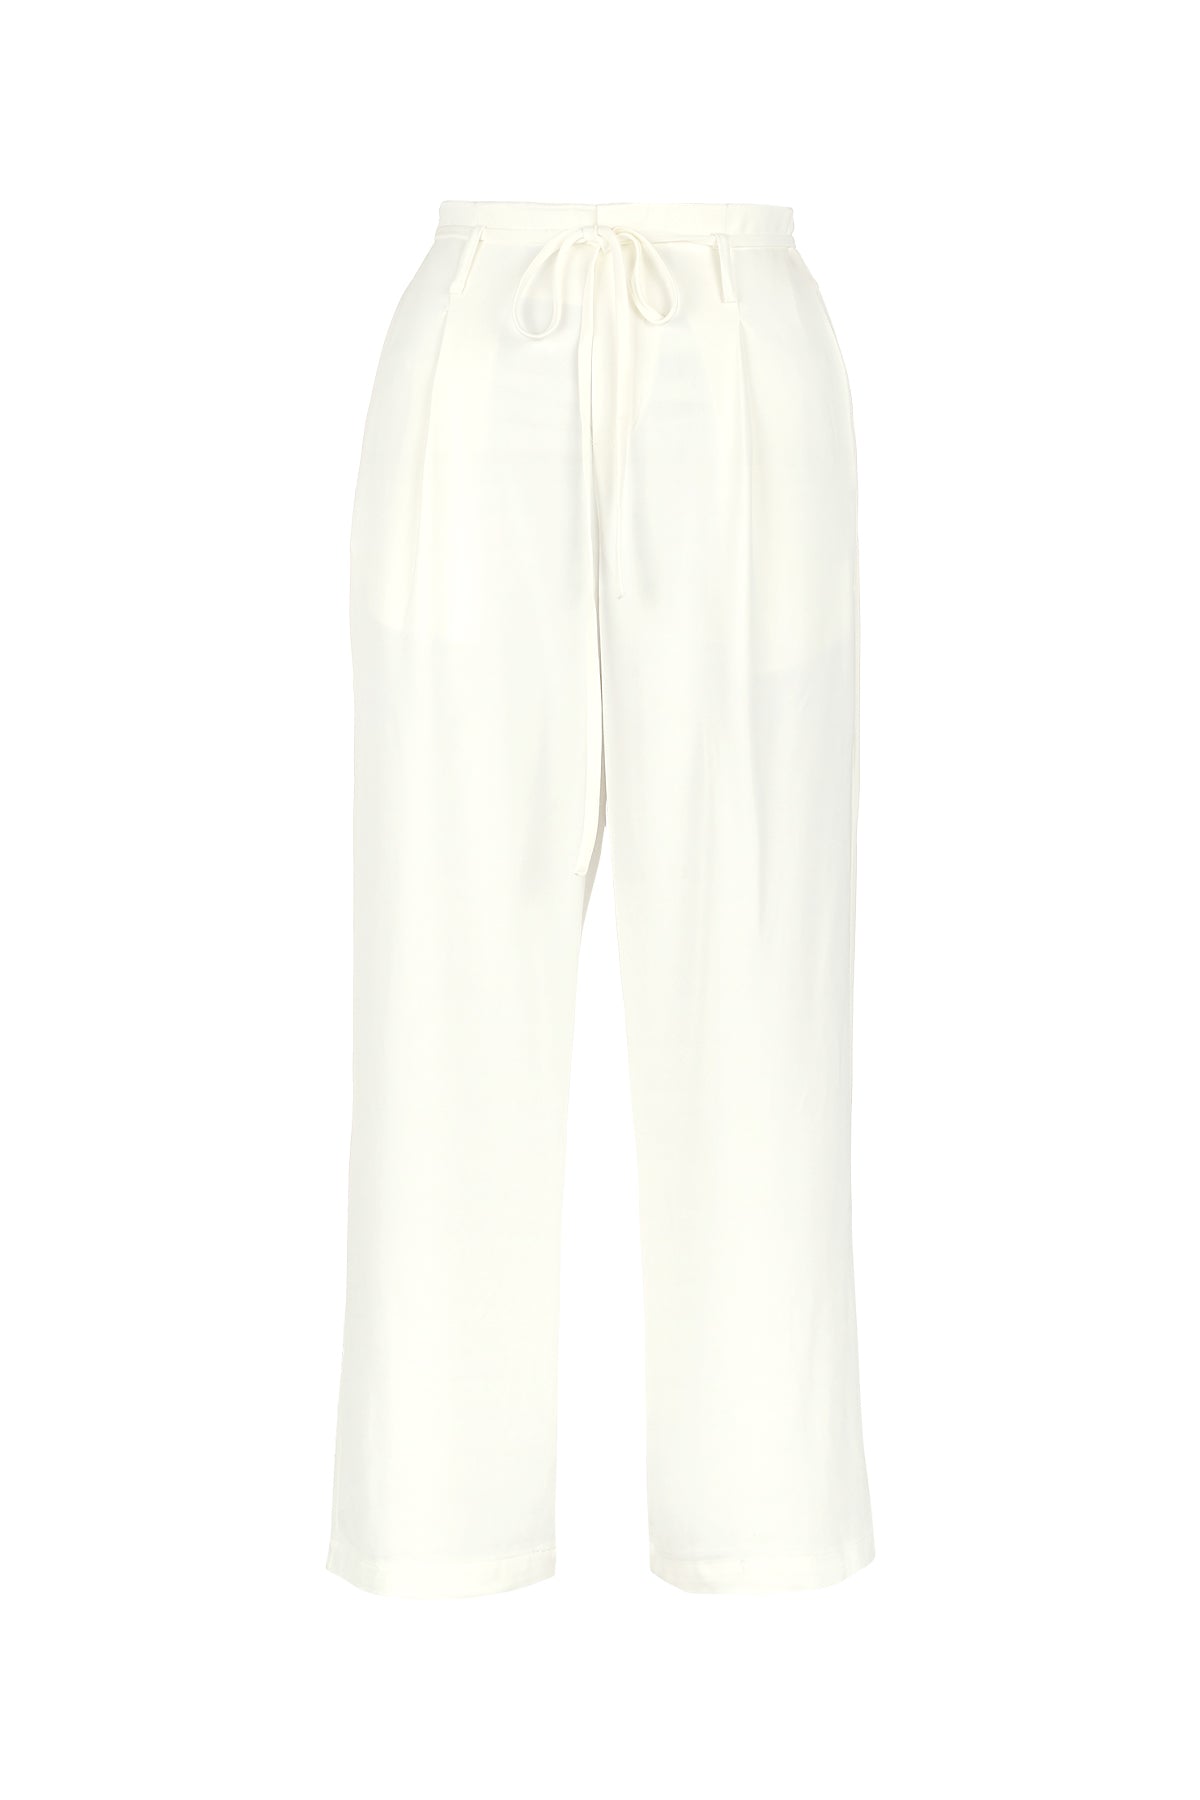 Alura Pants - White